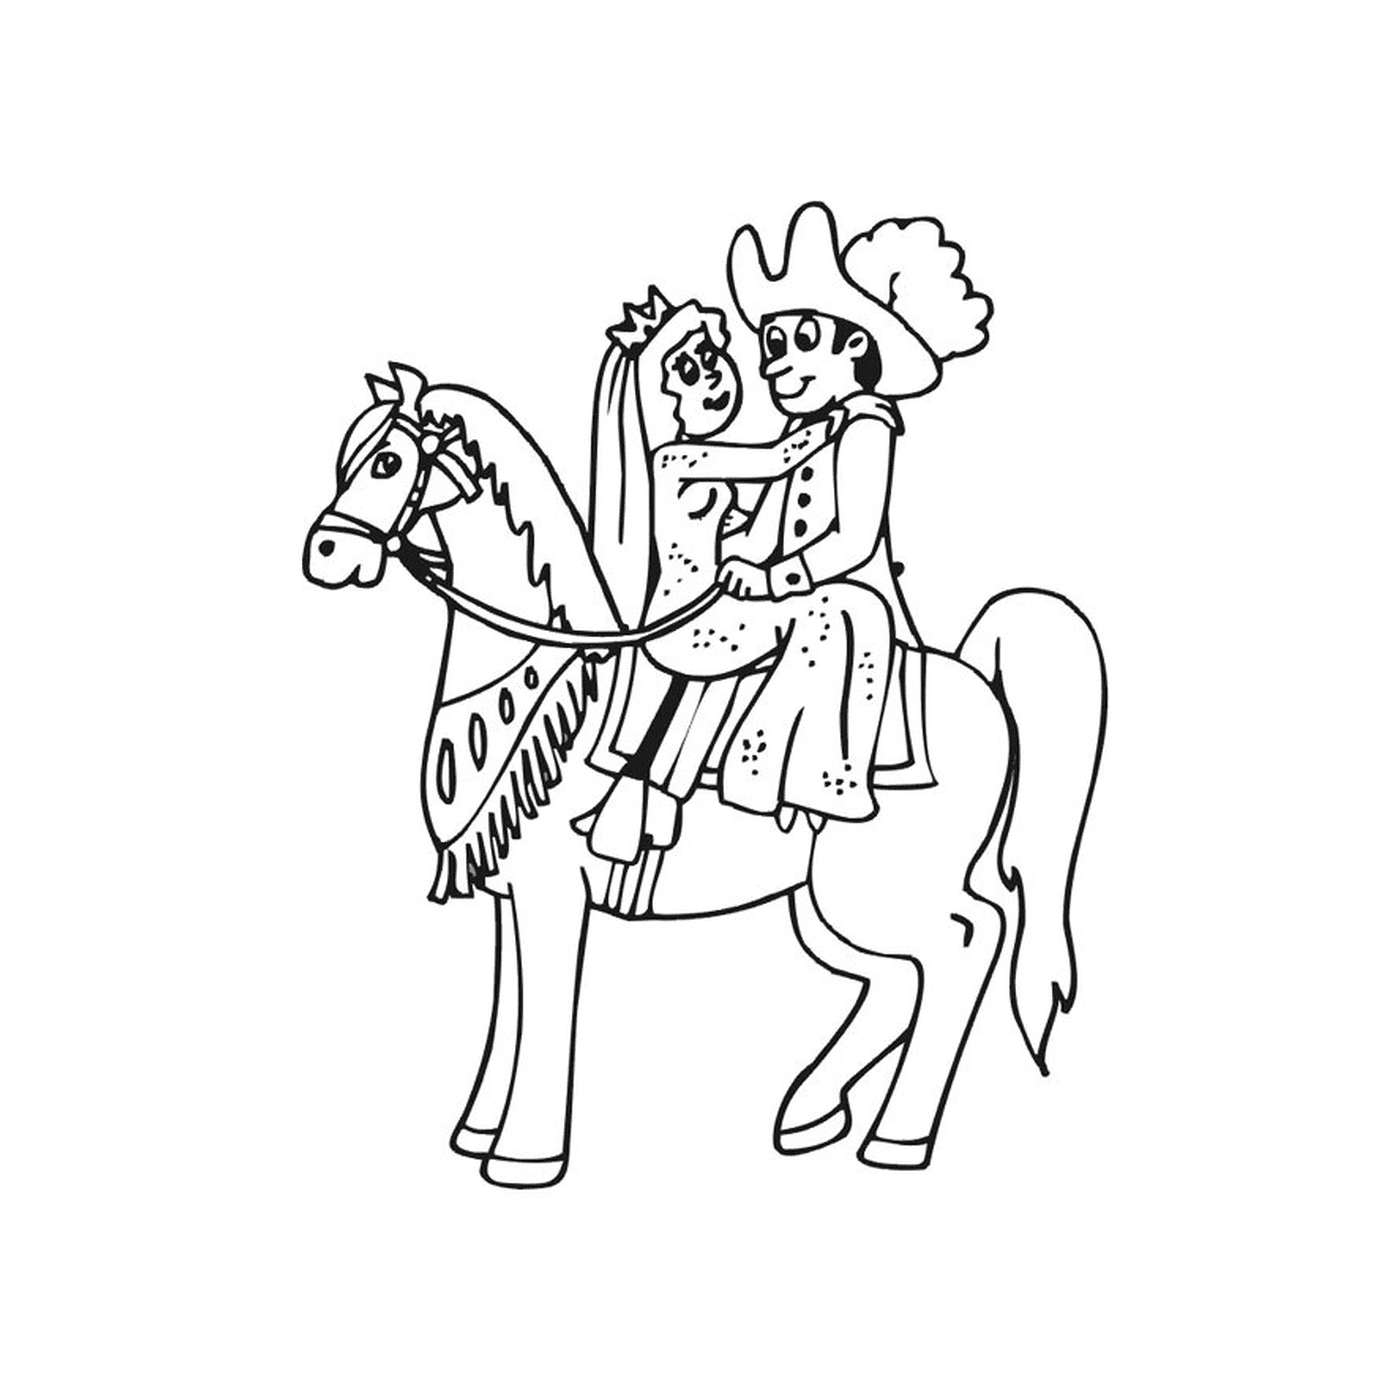   Cheval princesse - Un homme assis sur un cheval brun 